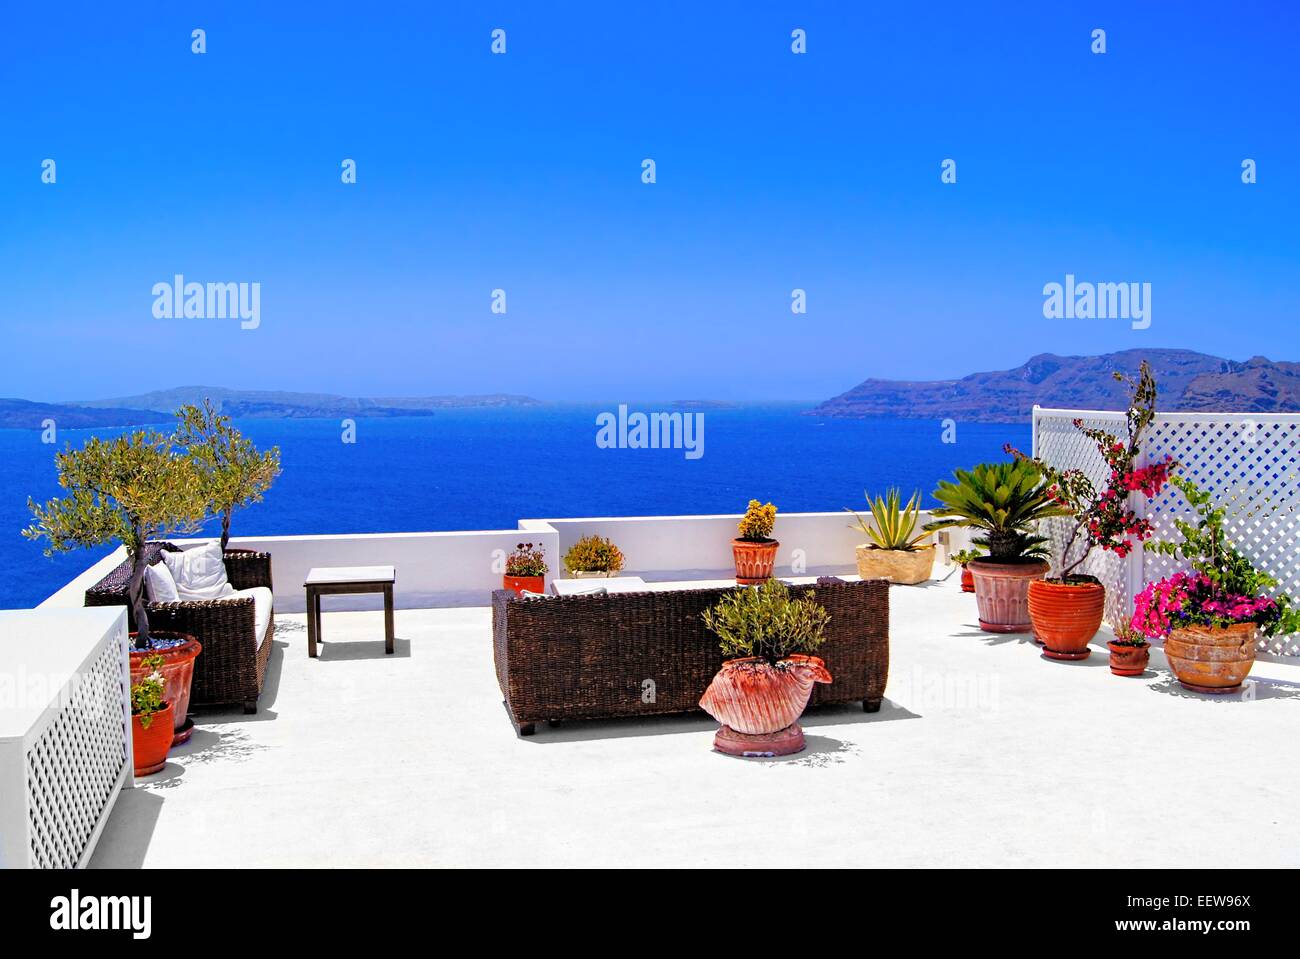 Luxurious terrace overlooking the sea on the island of Santorini, Greece Stock Photo